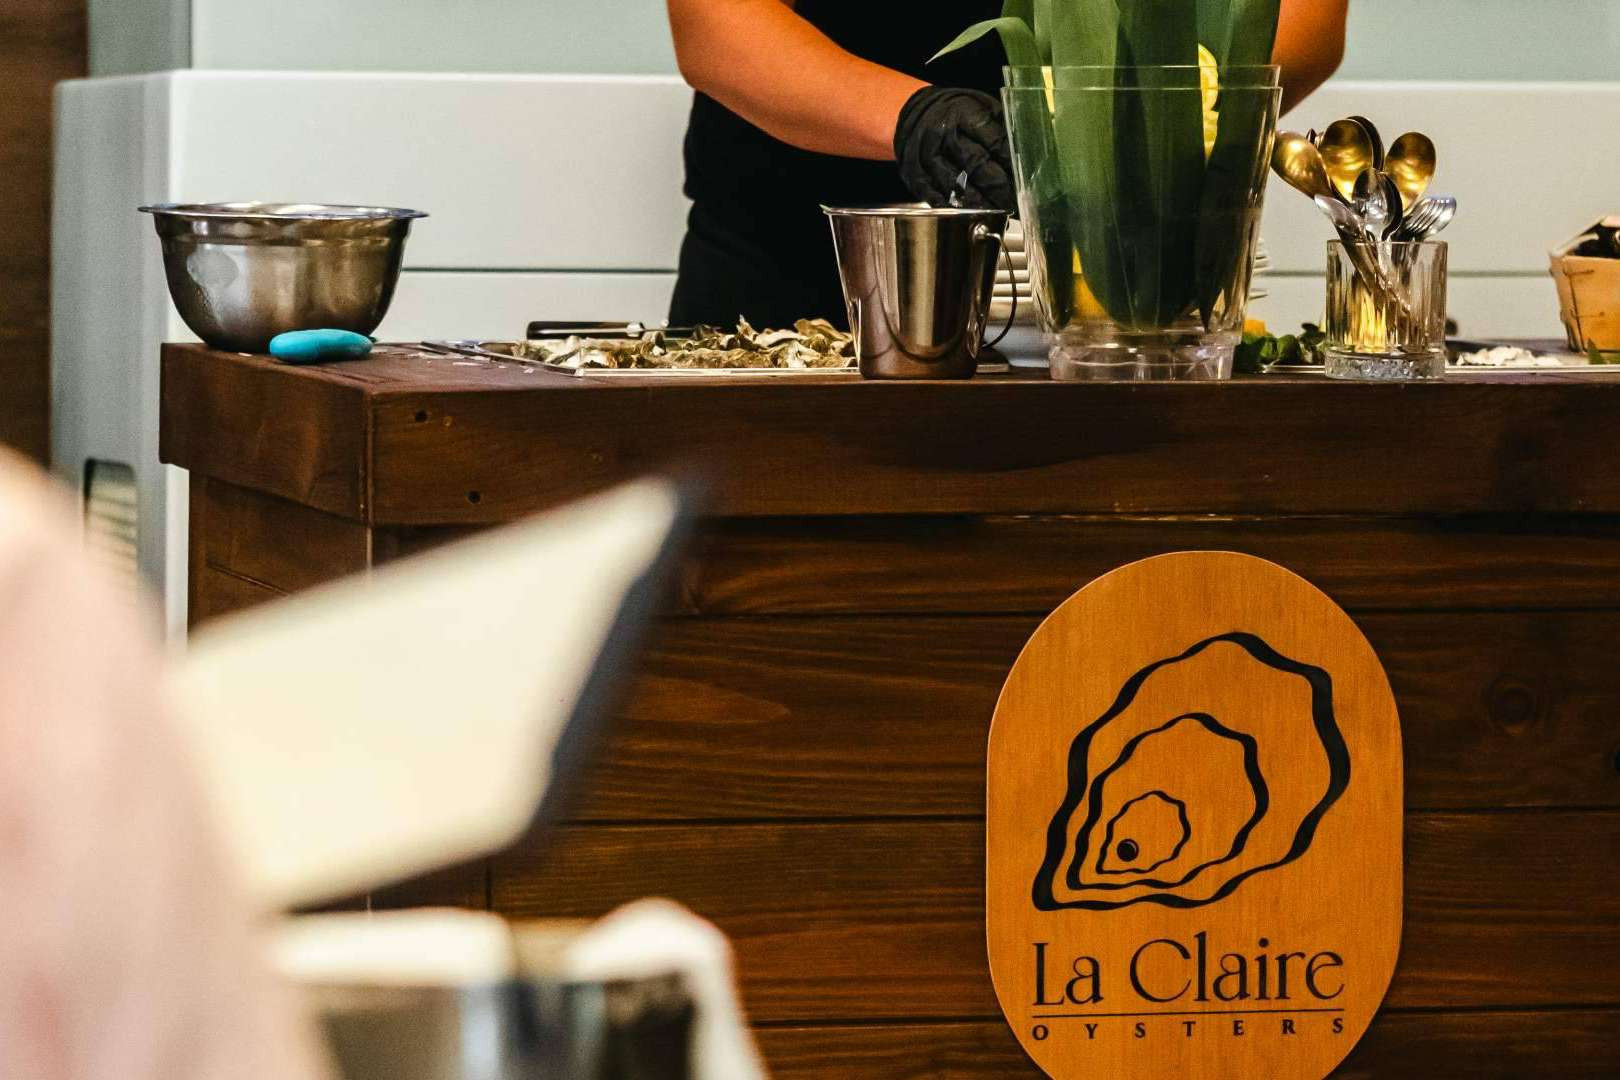  Exclusividad y Excelencia; La Gastronomía de Murcia es Transformada por La Claire Oysters y Albaladejo. 